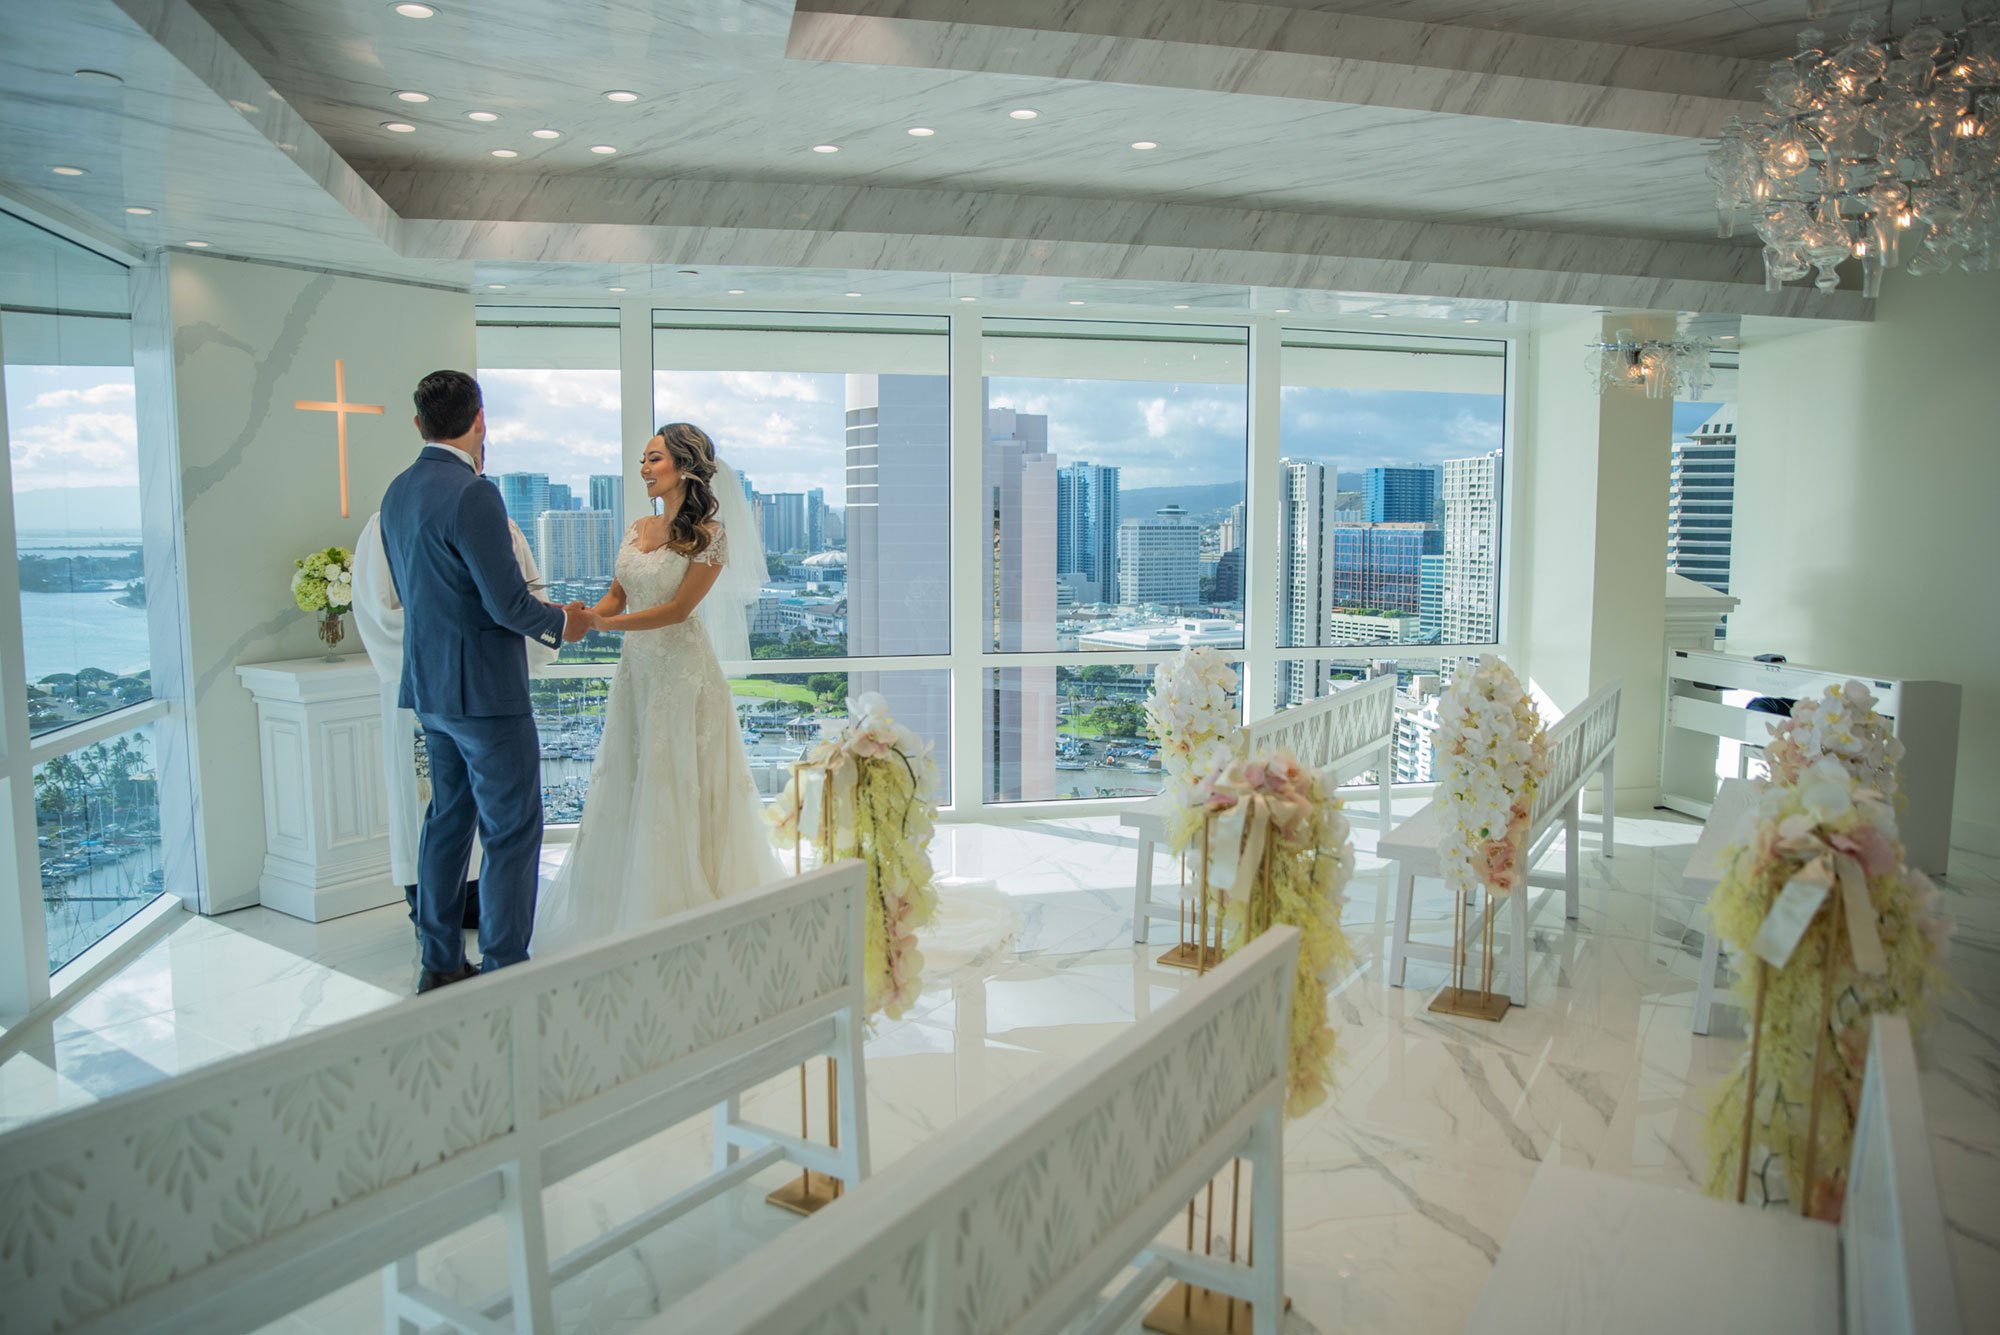 The Ilikai Chapel Wedding Venue — The Best Hawaii Wedding | Wedding ...